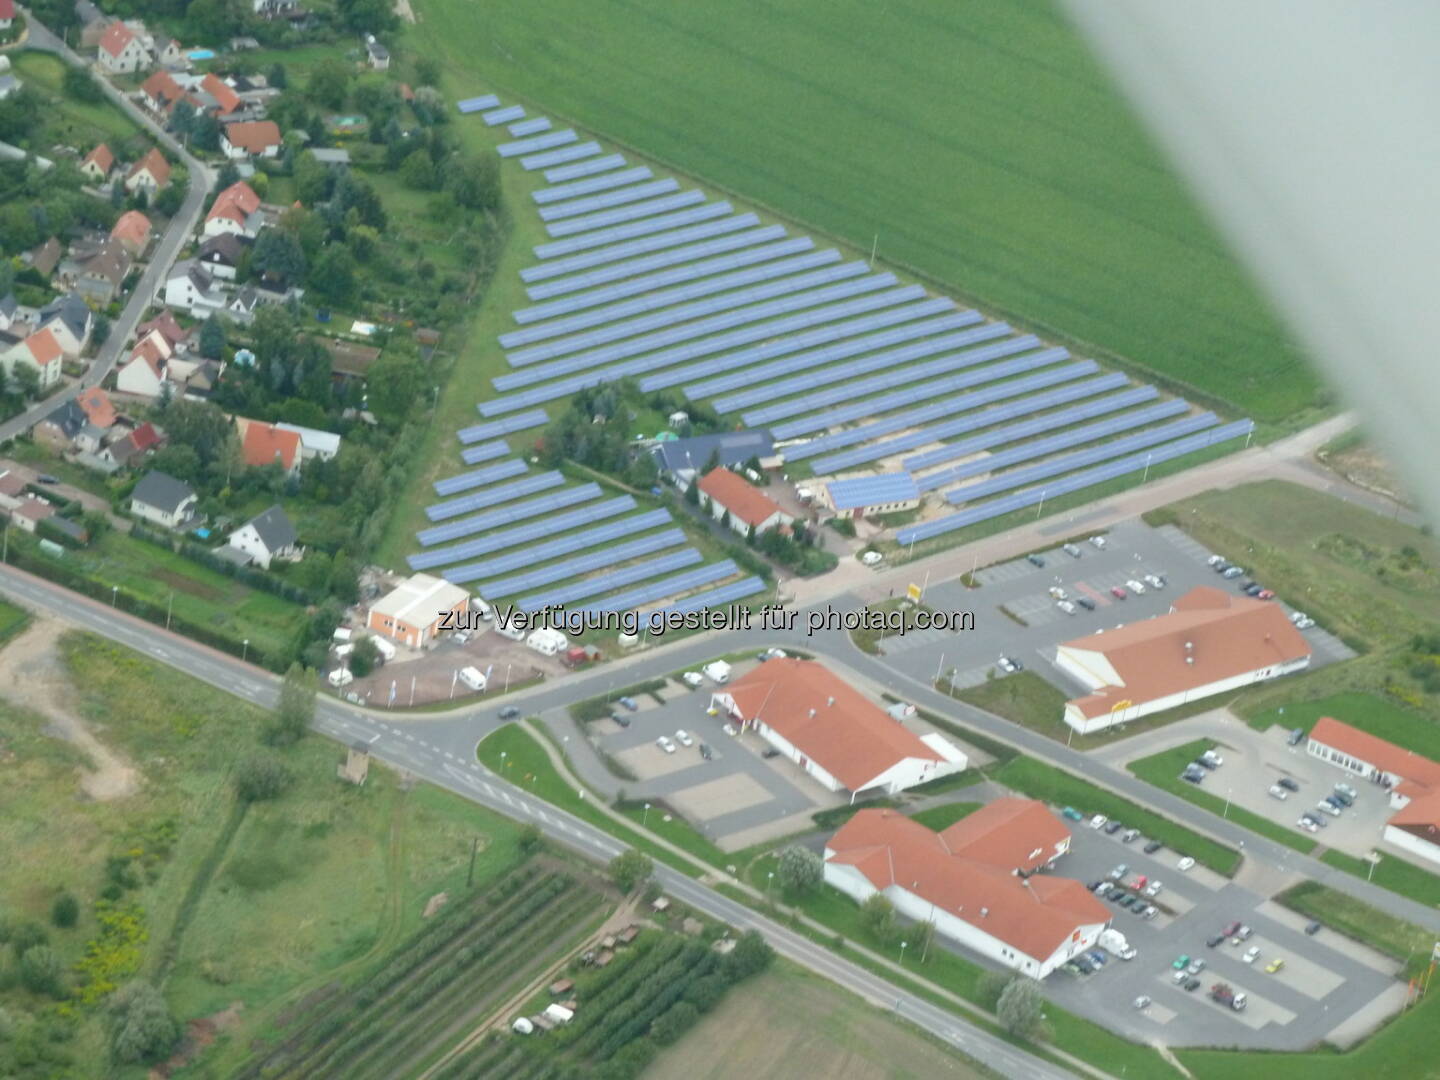 Solarparks werden bei privaten Investoren immer beliebter, Anleger setzen beim Crowdfunding verstärkt auf Sonnenenergie (Aussendung Sonneninvest), im Bild Solarpark Langenbogen Luftbild (Bild: Sonneninvest AG) 